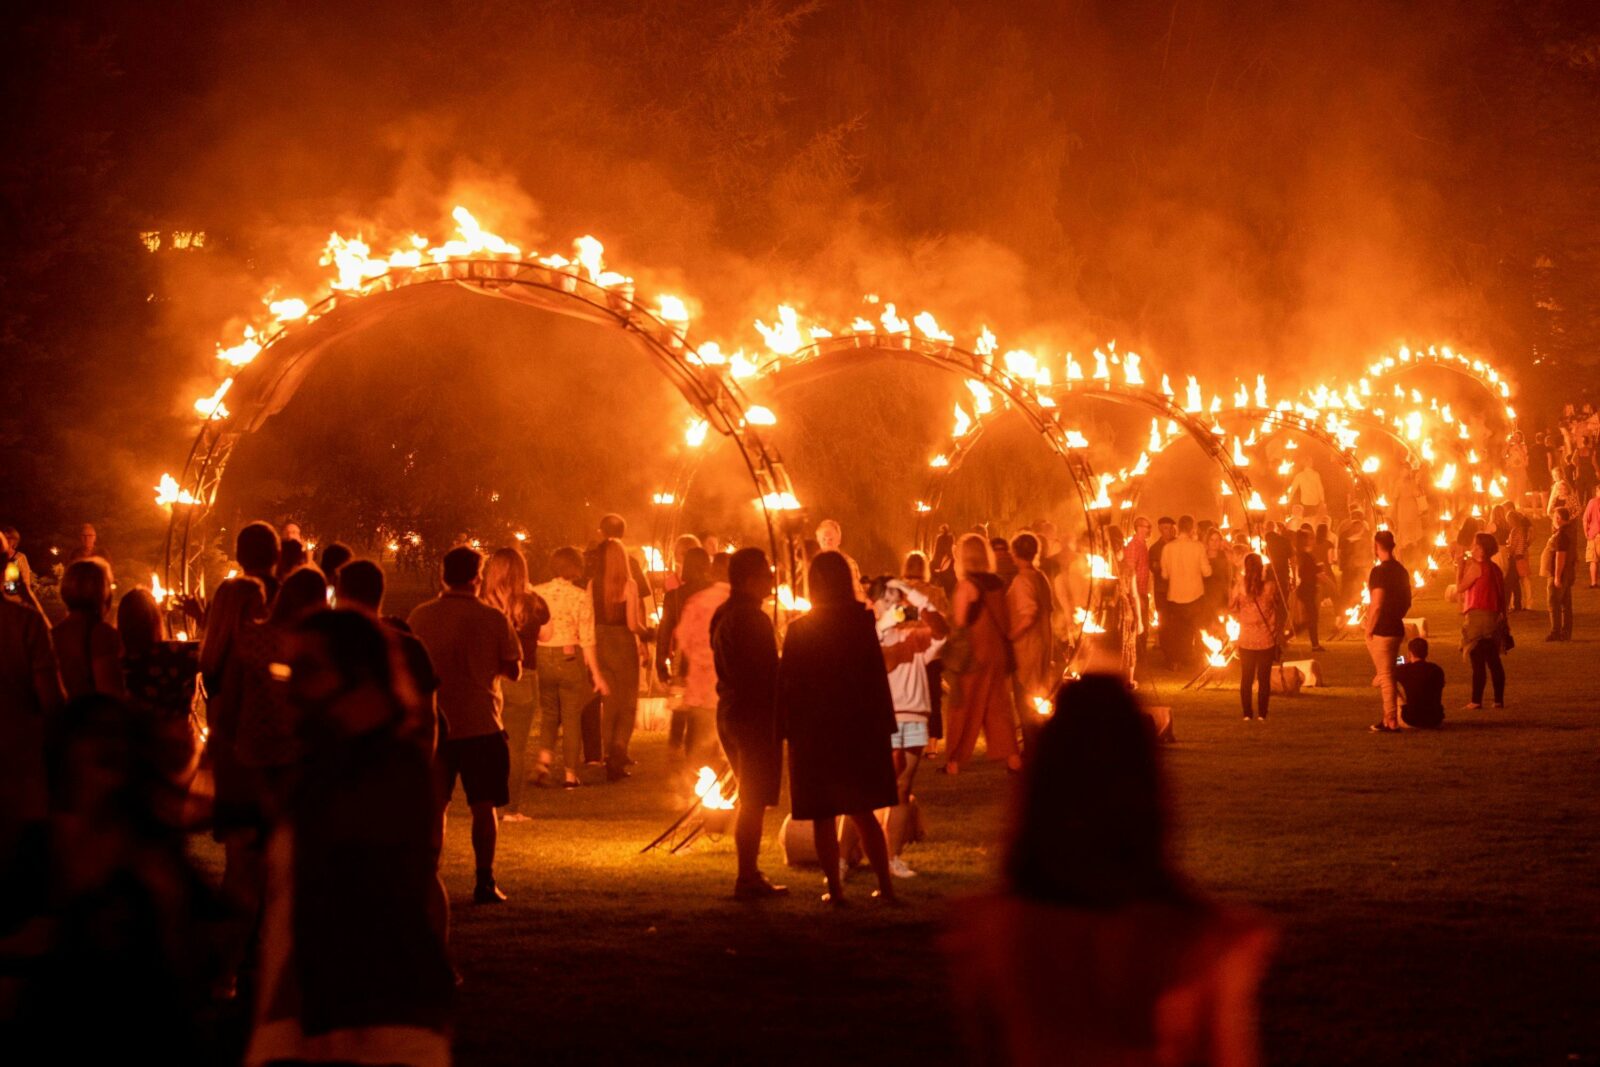 People walking through hoops of fire.